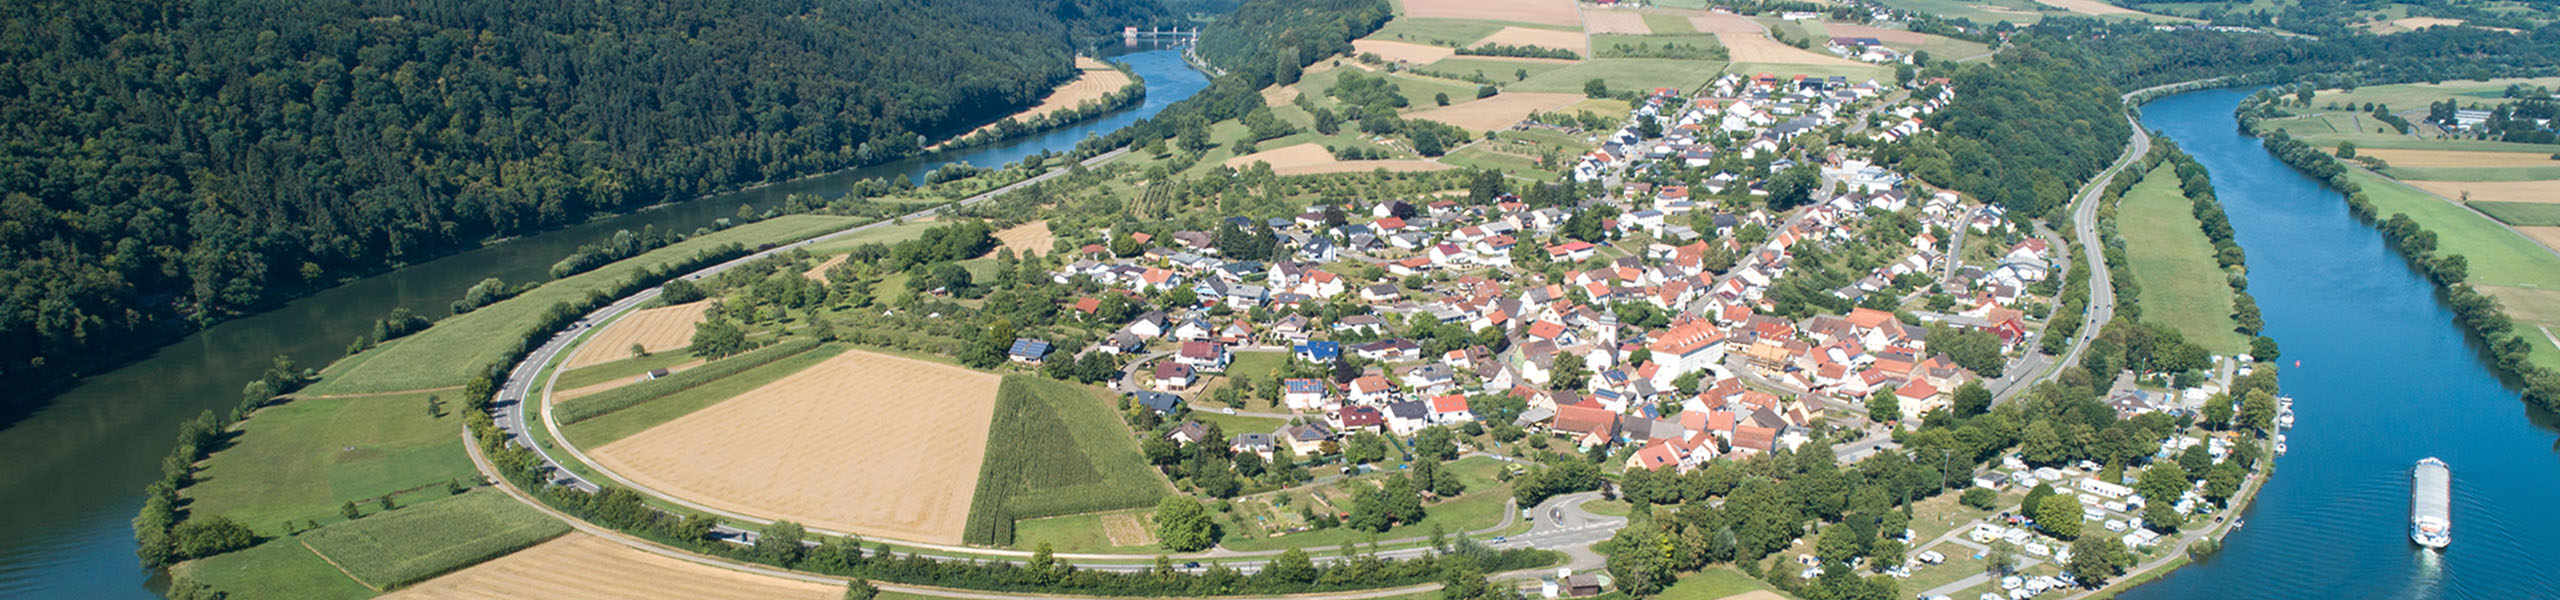 50 Jahre Neckar-Odenwald-Kreis - Kreisräte seit 1973